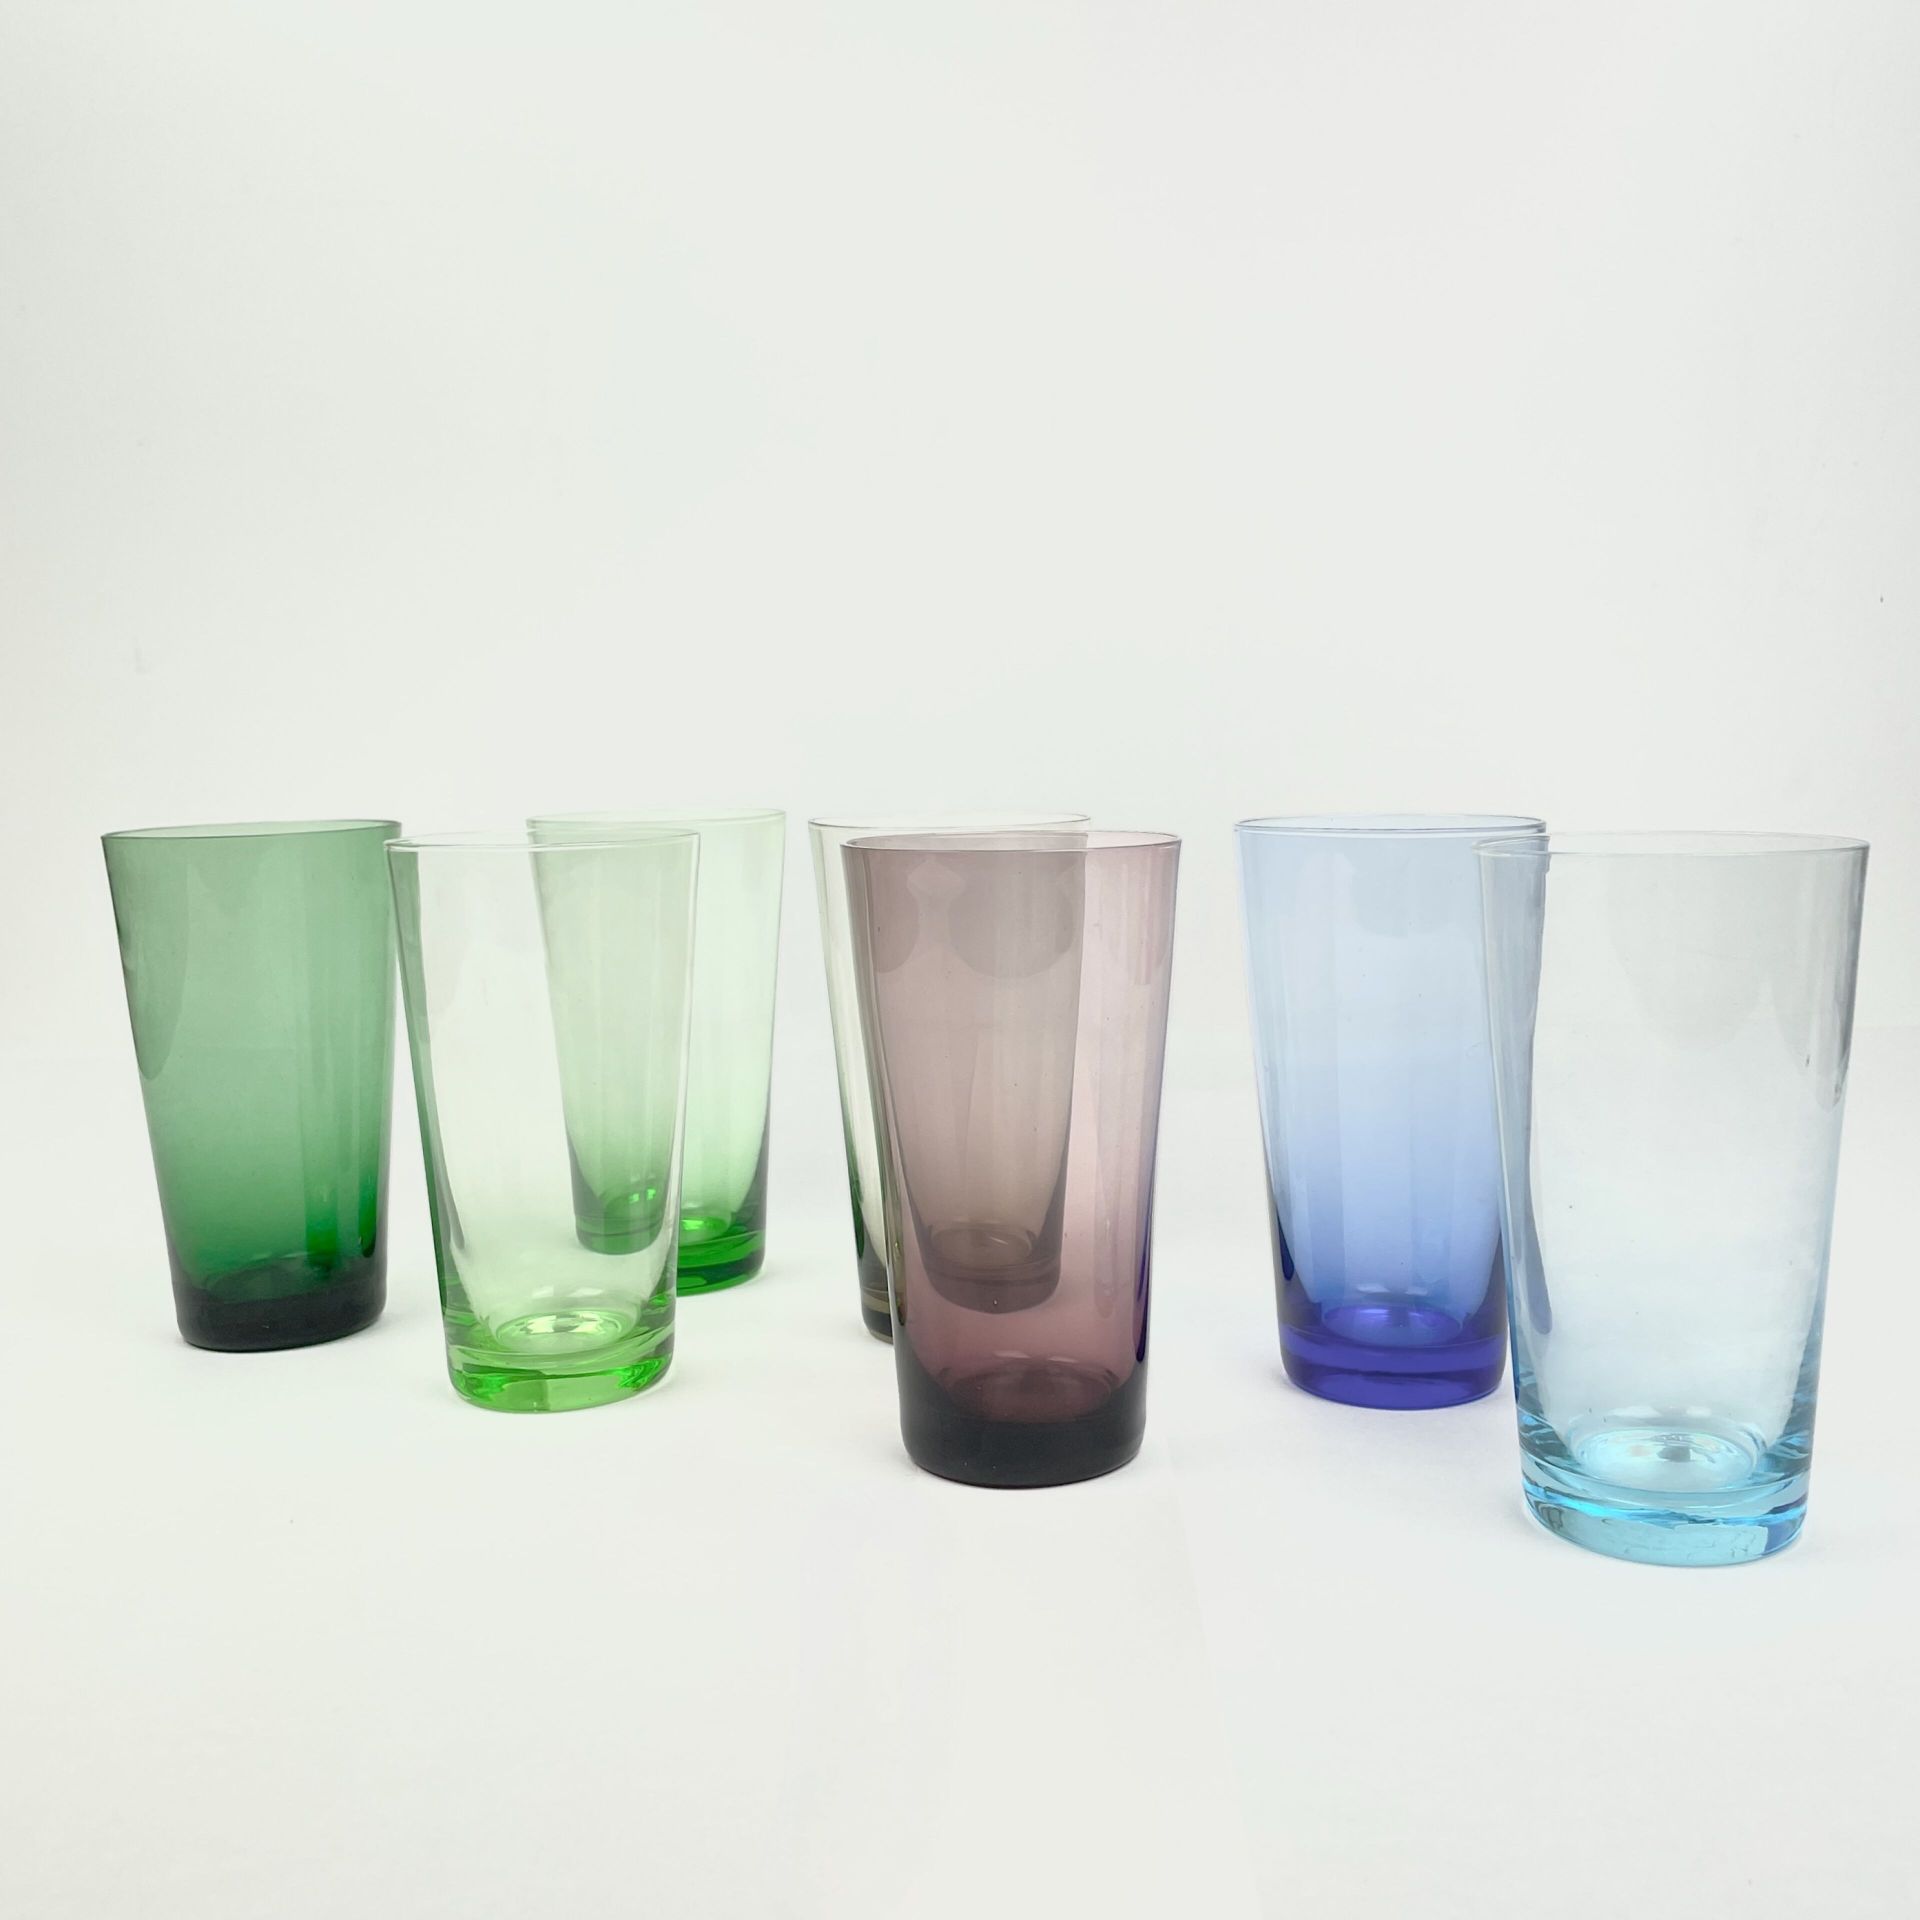 Null 约 1970 年 
7 件套蓝绿紫锥形玻璃杯 
H.13 厘米 

烧制缺陷（气泡），一只玻璃杯破裂，已使用过